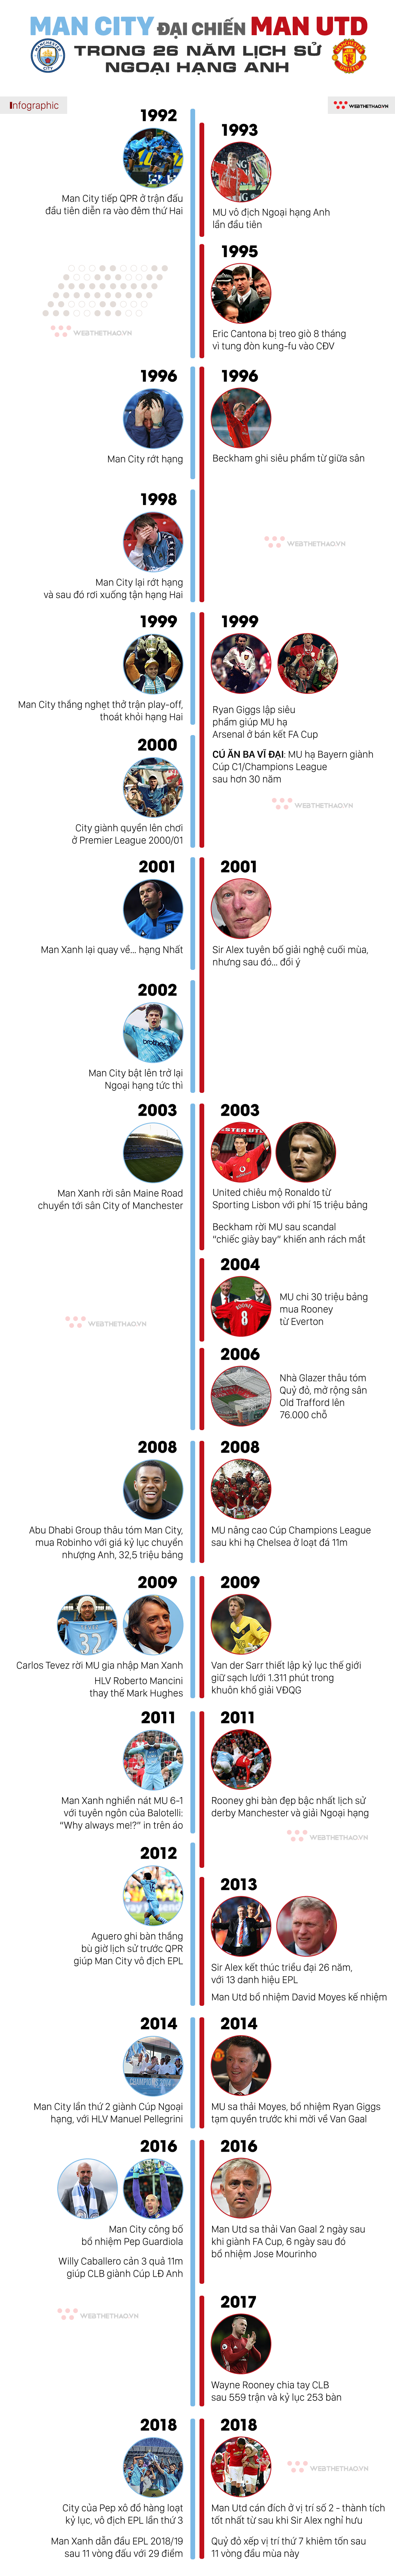 Infographic: Man City so kè Man Utd thế nào trong 26 năm lịch sử Ngoại hạng Anh? - Ảnh 1.